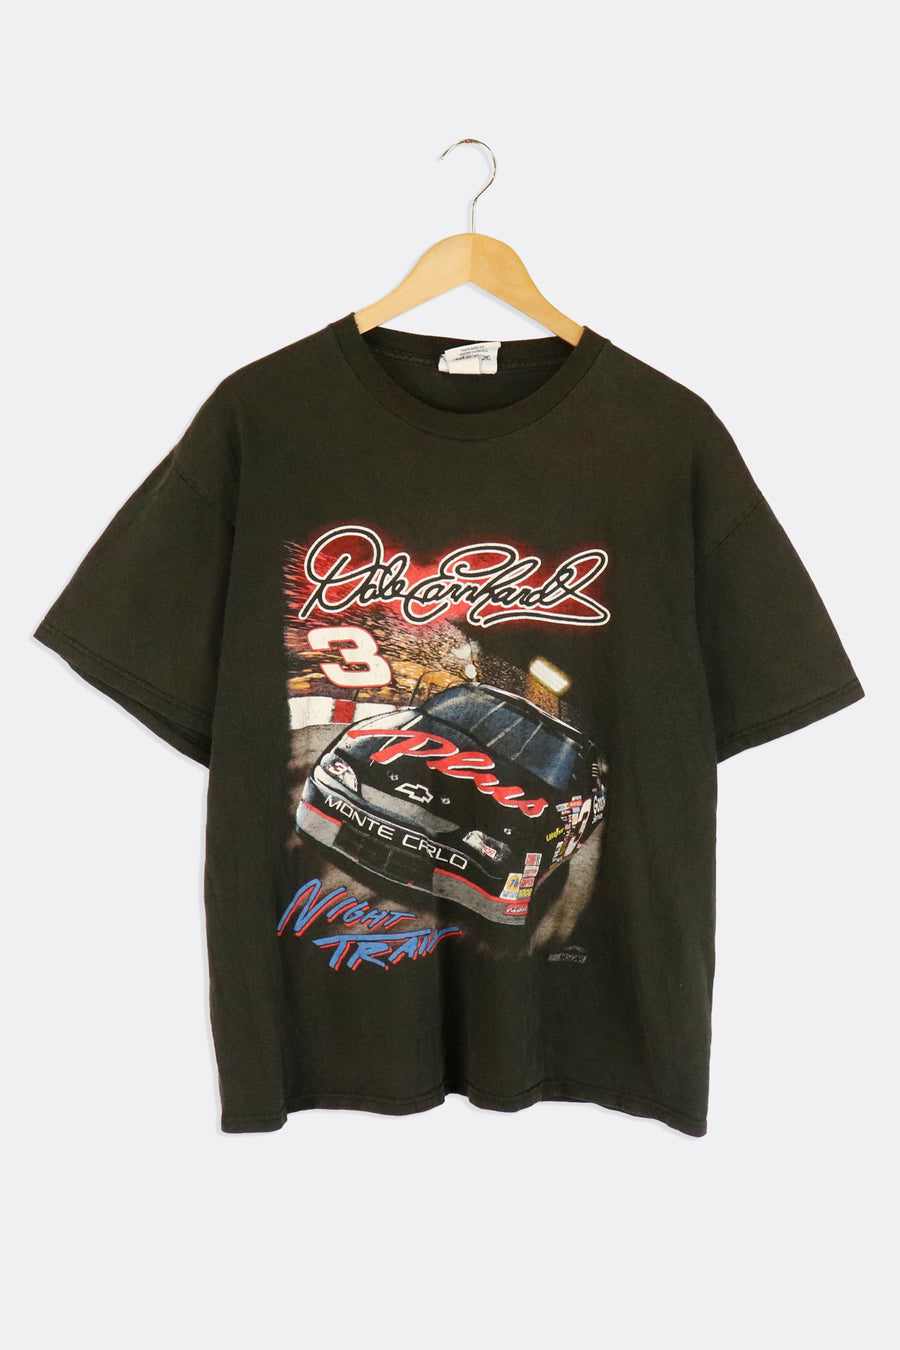 Vintage Nascar Dale Earnhardt 3 Goodwrench Sposnorship Car Vinyl T Shirt Sz L